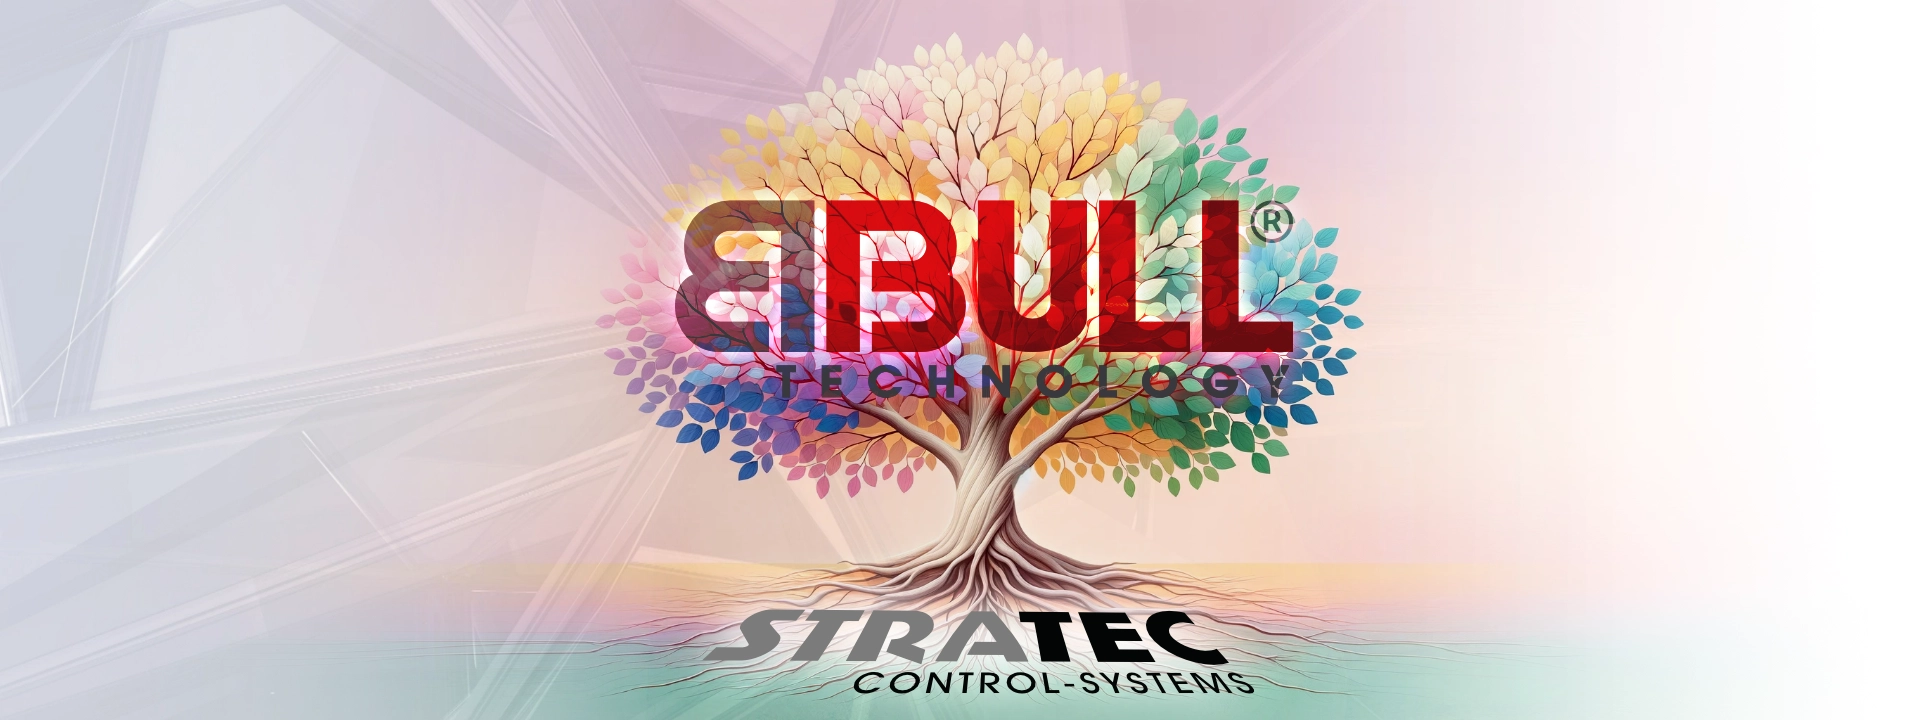 Eintritt in ein neues Kapitel: Stratec Control-Systems heißt jetzt BBULL Technology